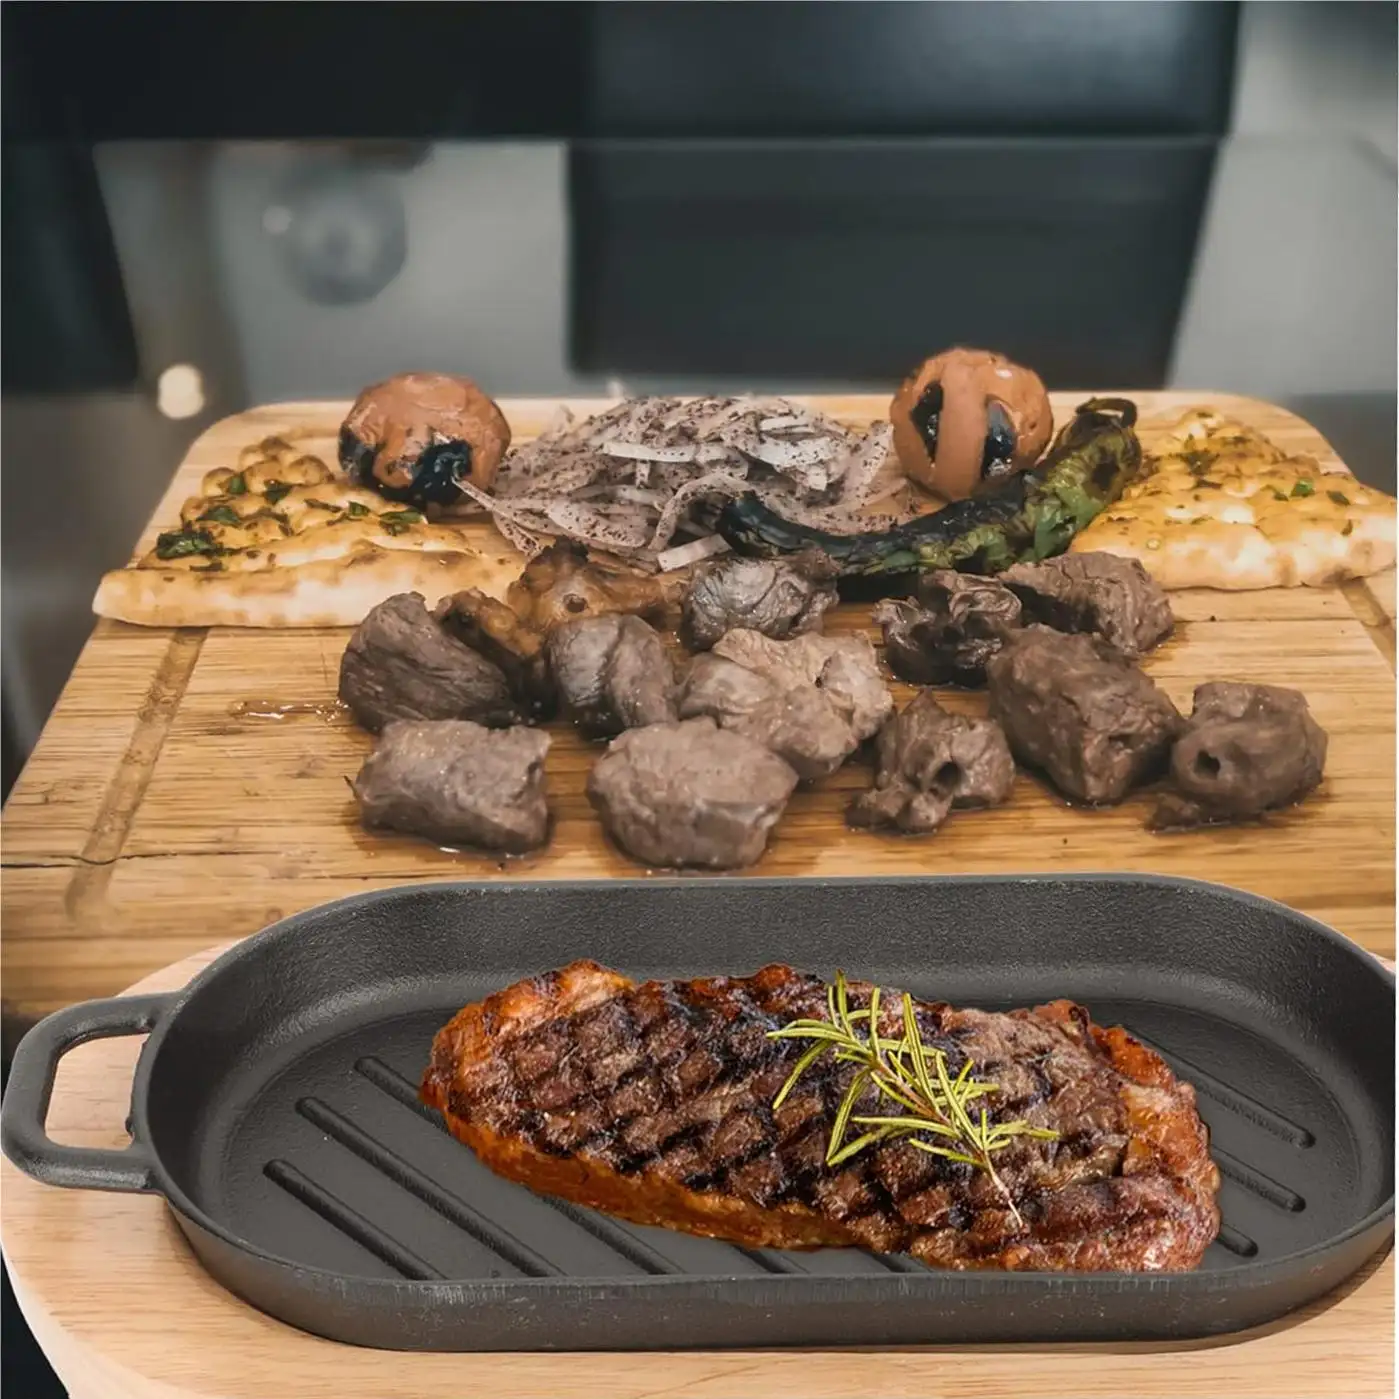 Yeni ürün patlama dökme demir kalbur biftek tencere yapışmaz barbekü sıcak fırın tepsisi